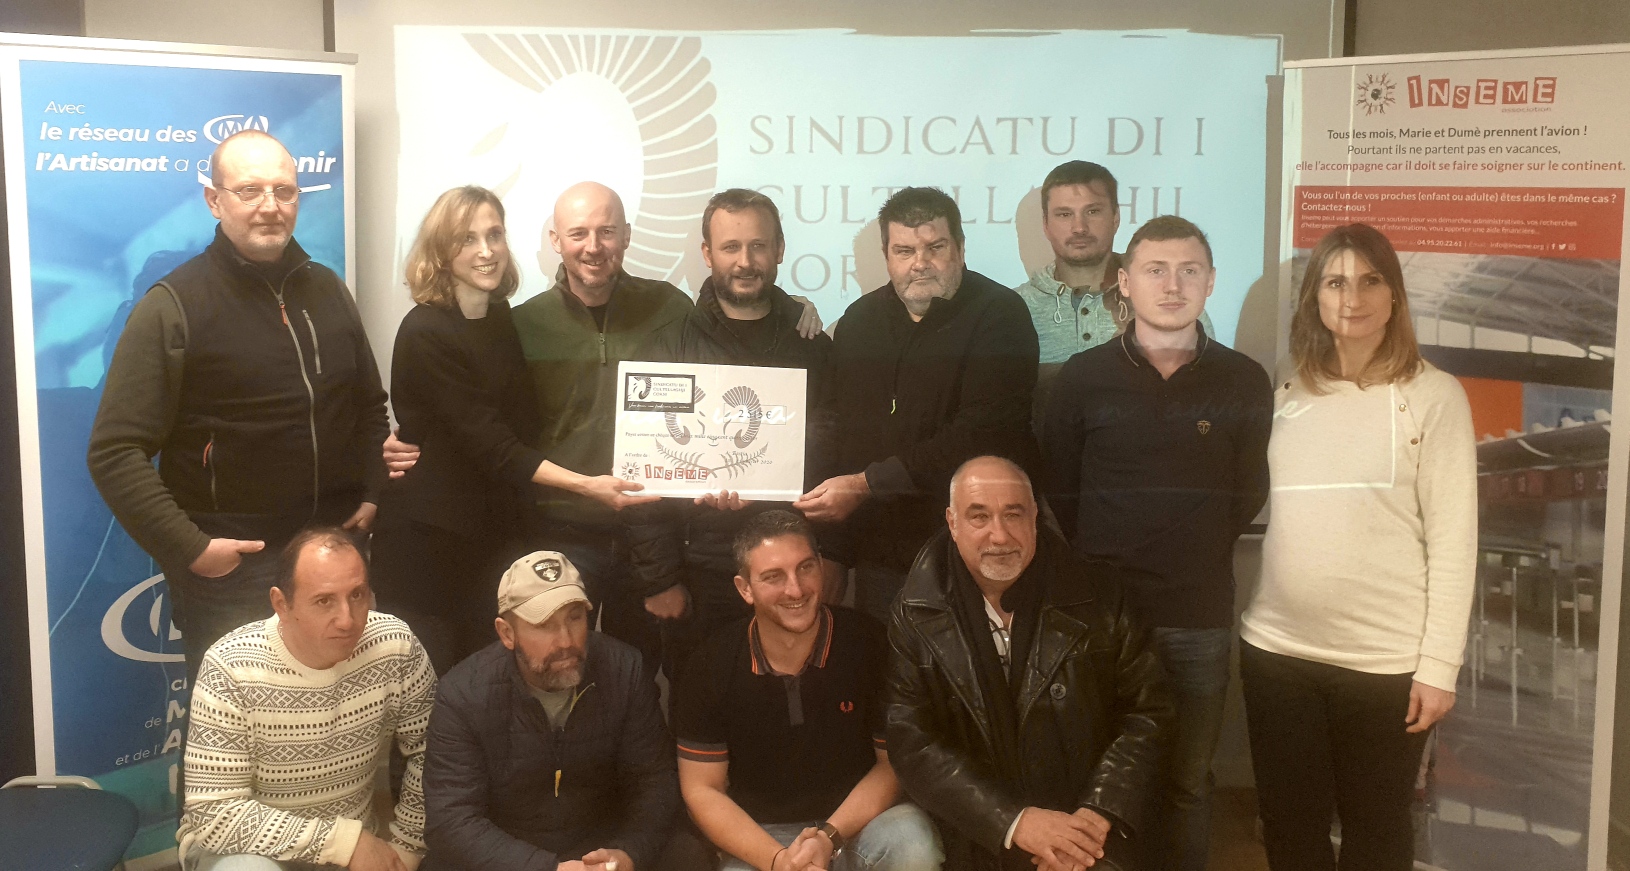 Bastia : "U sindicatu di i Cultellaghji Corsi" remet un chèque de 2 500€ à Inseme